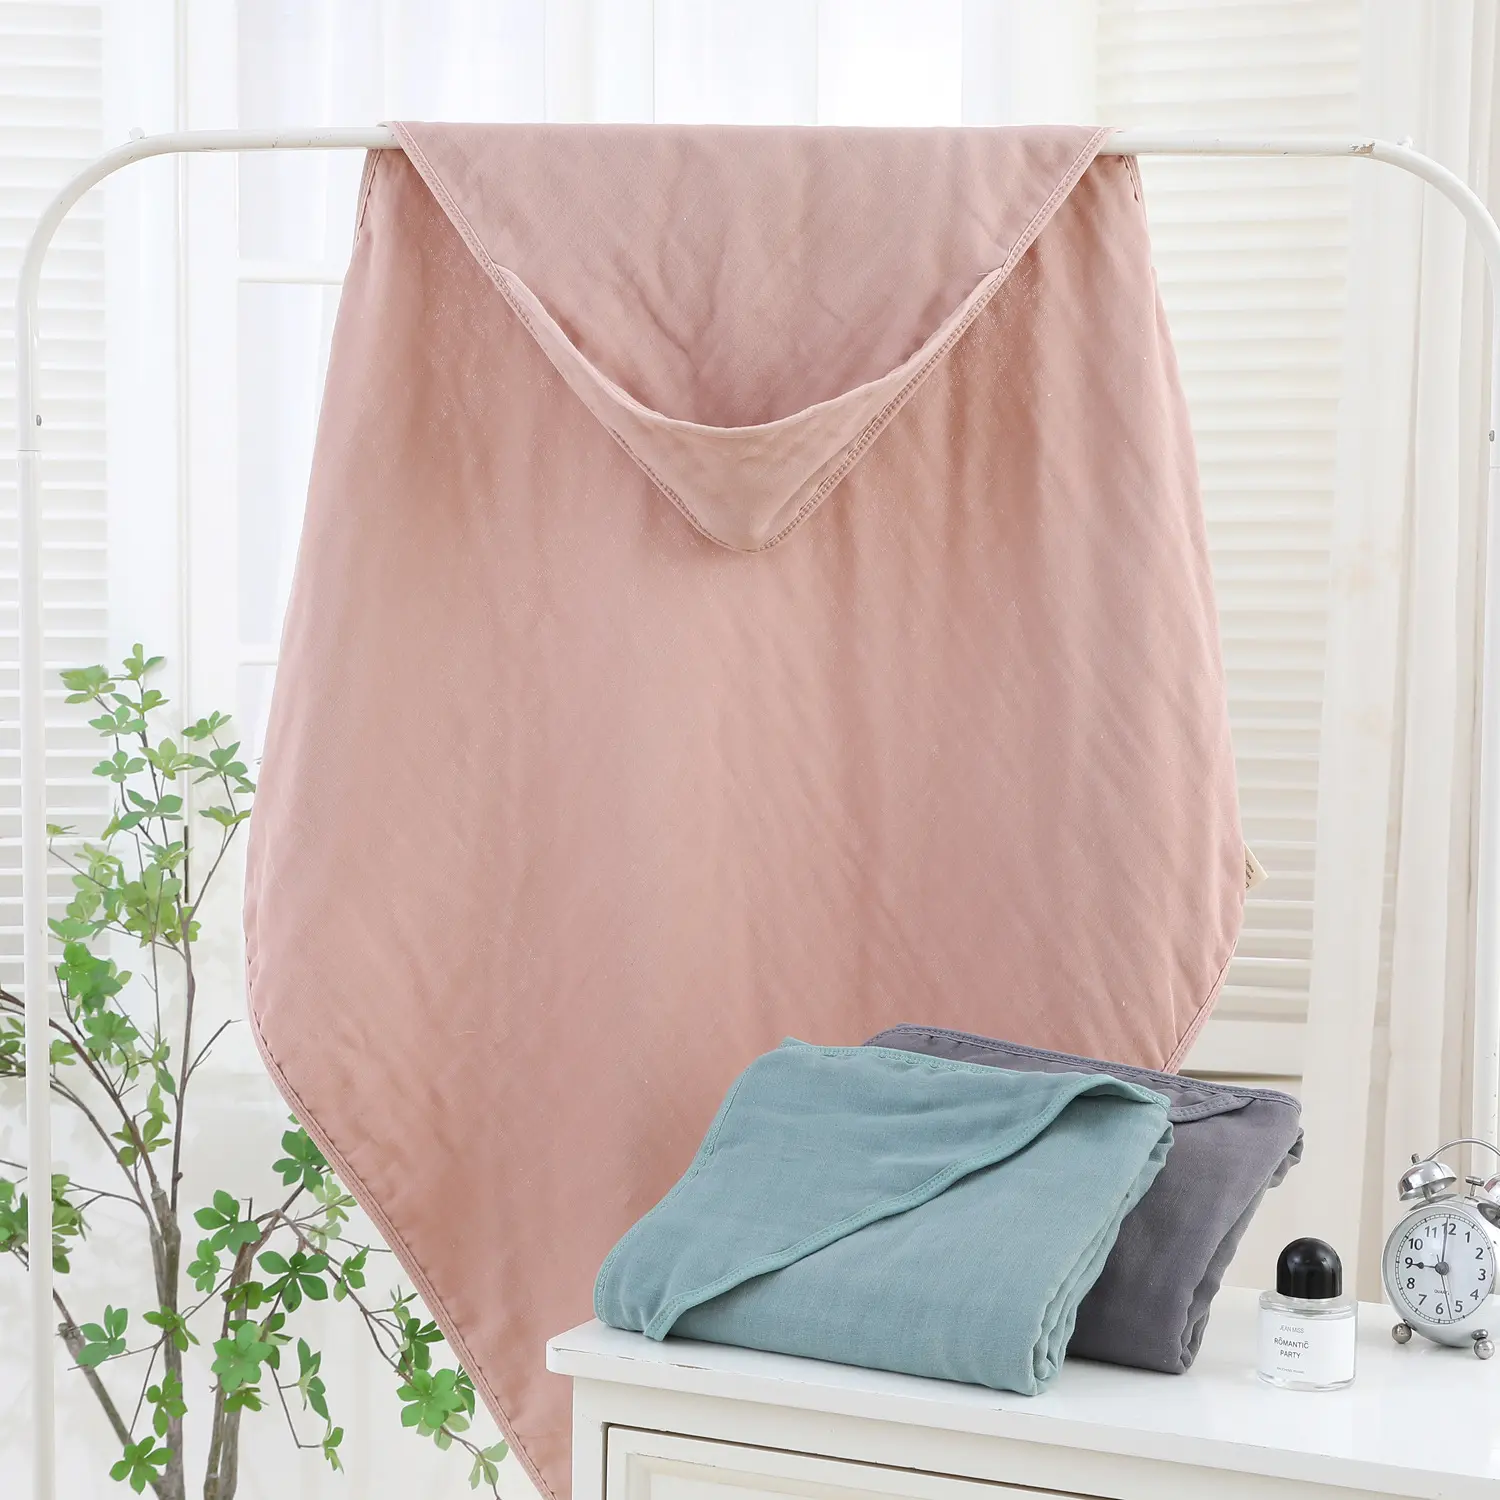 Handuk mandi bungkus kain kasa bunga mewah klasik ukuran besar 100% handuk bertudung bayi baru lahir katun rubah muslin